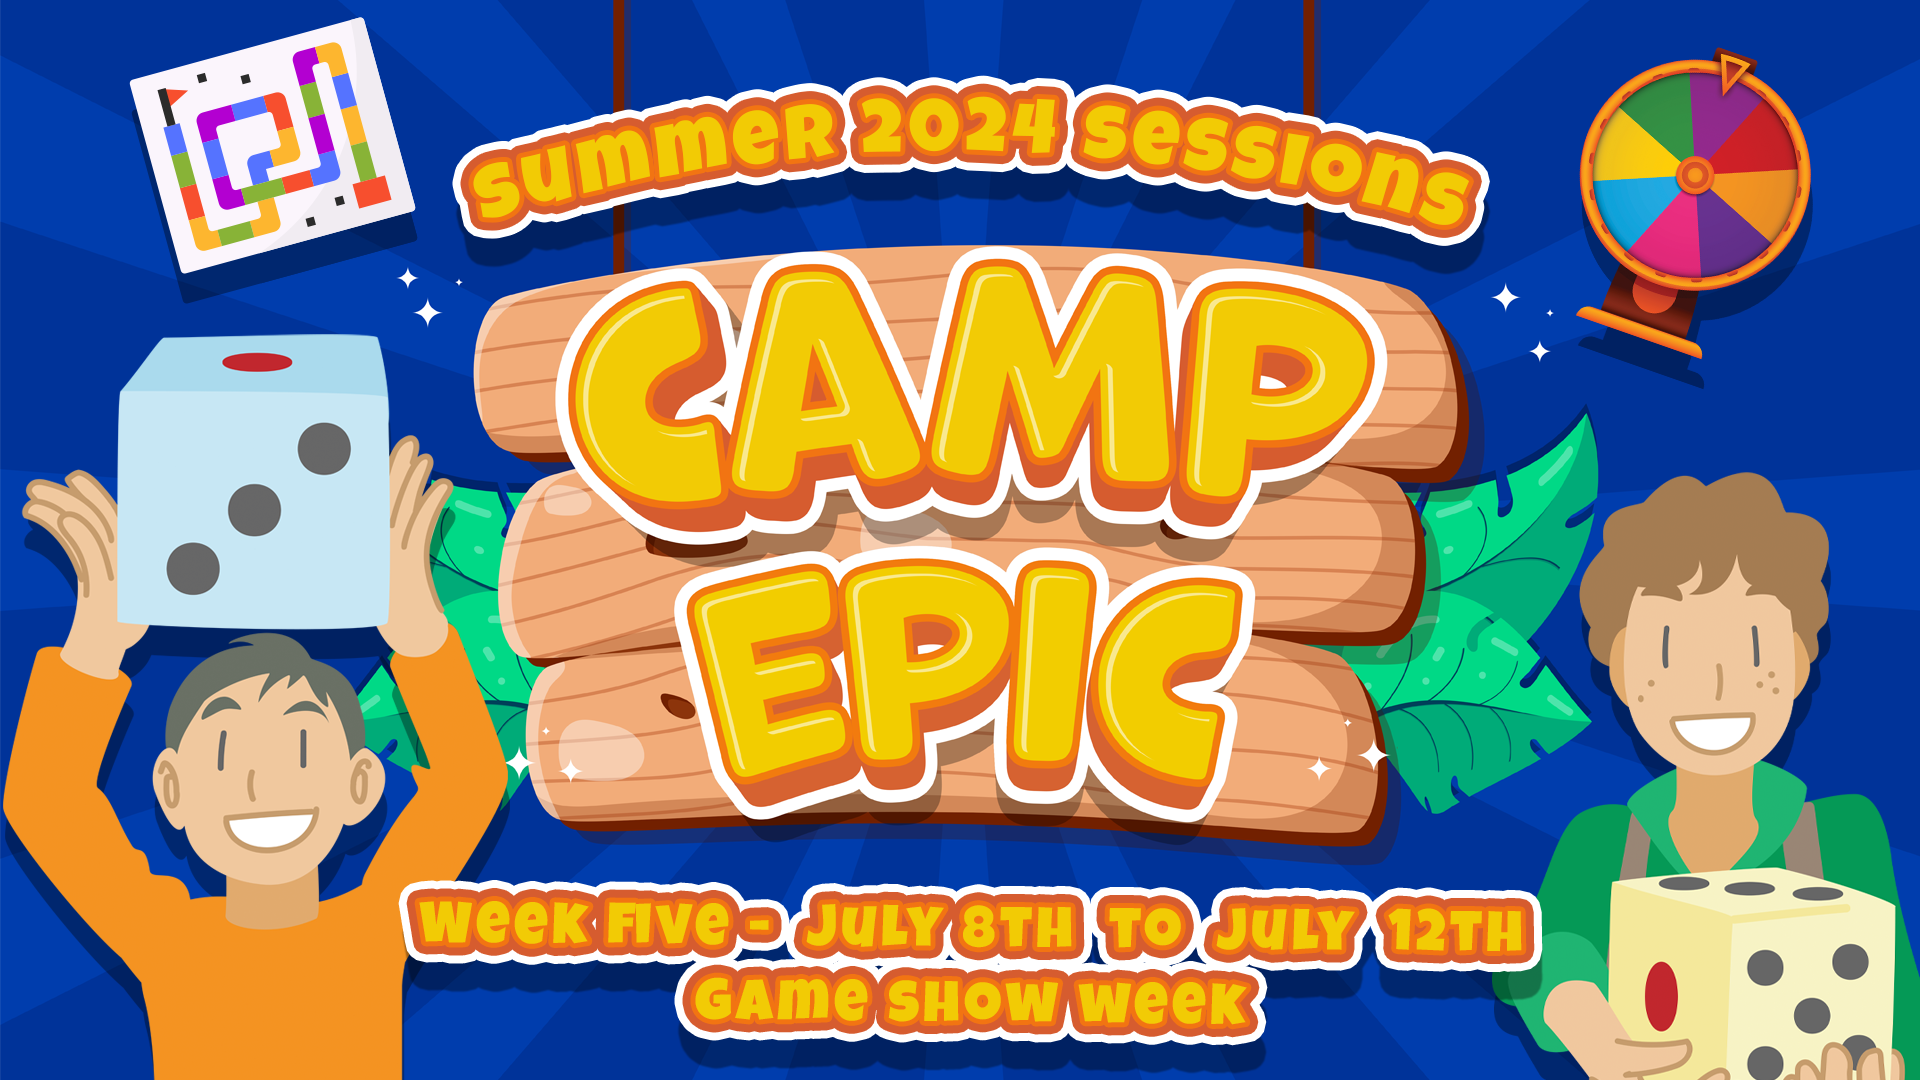 Camp Epic Week 5